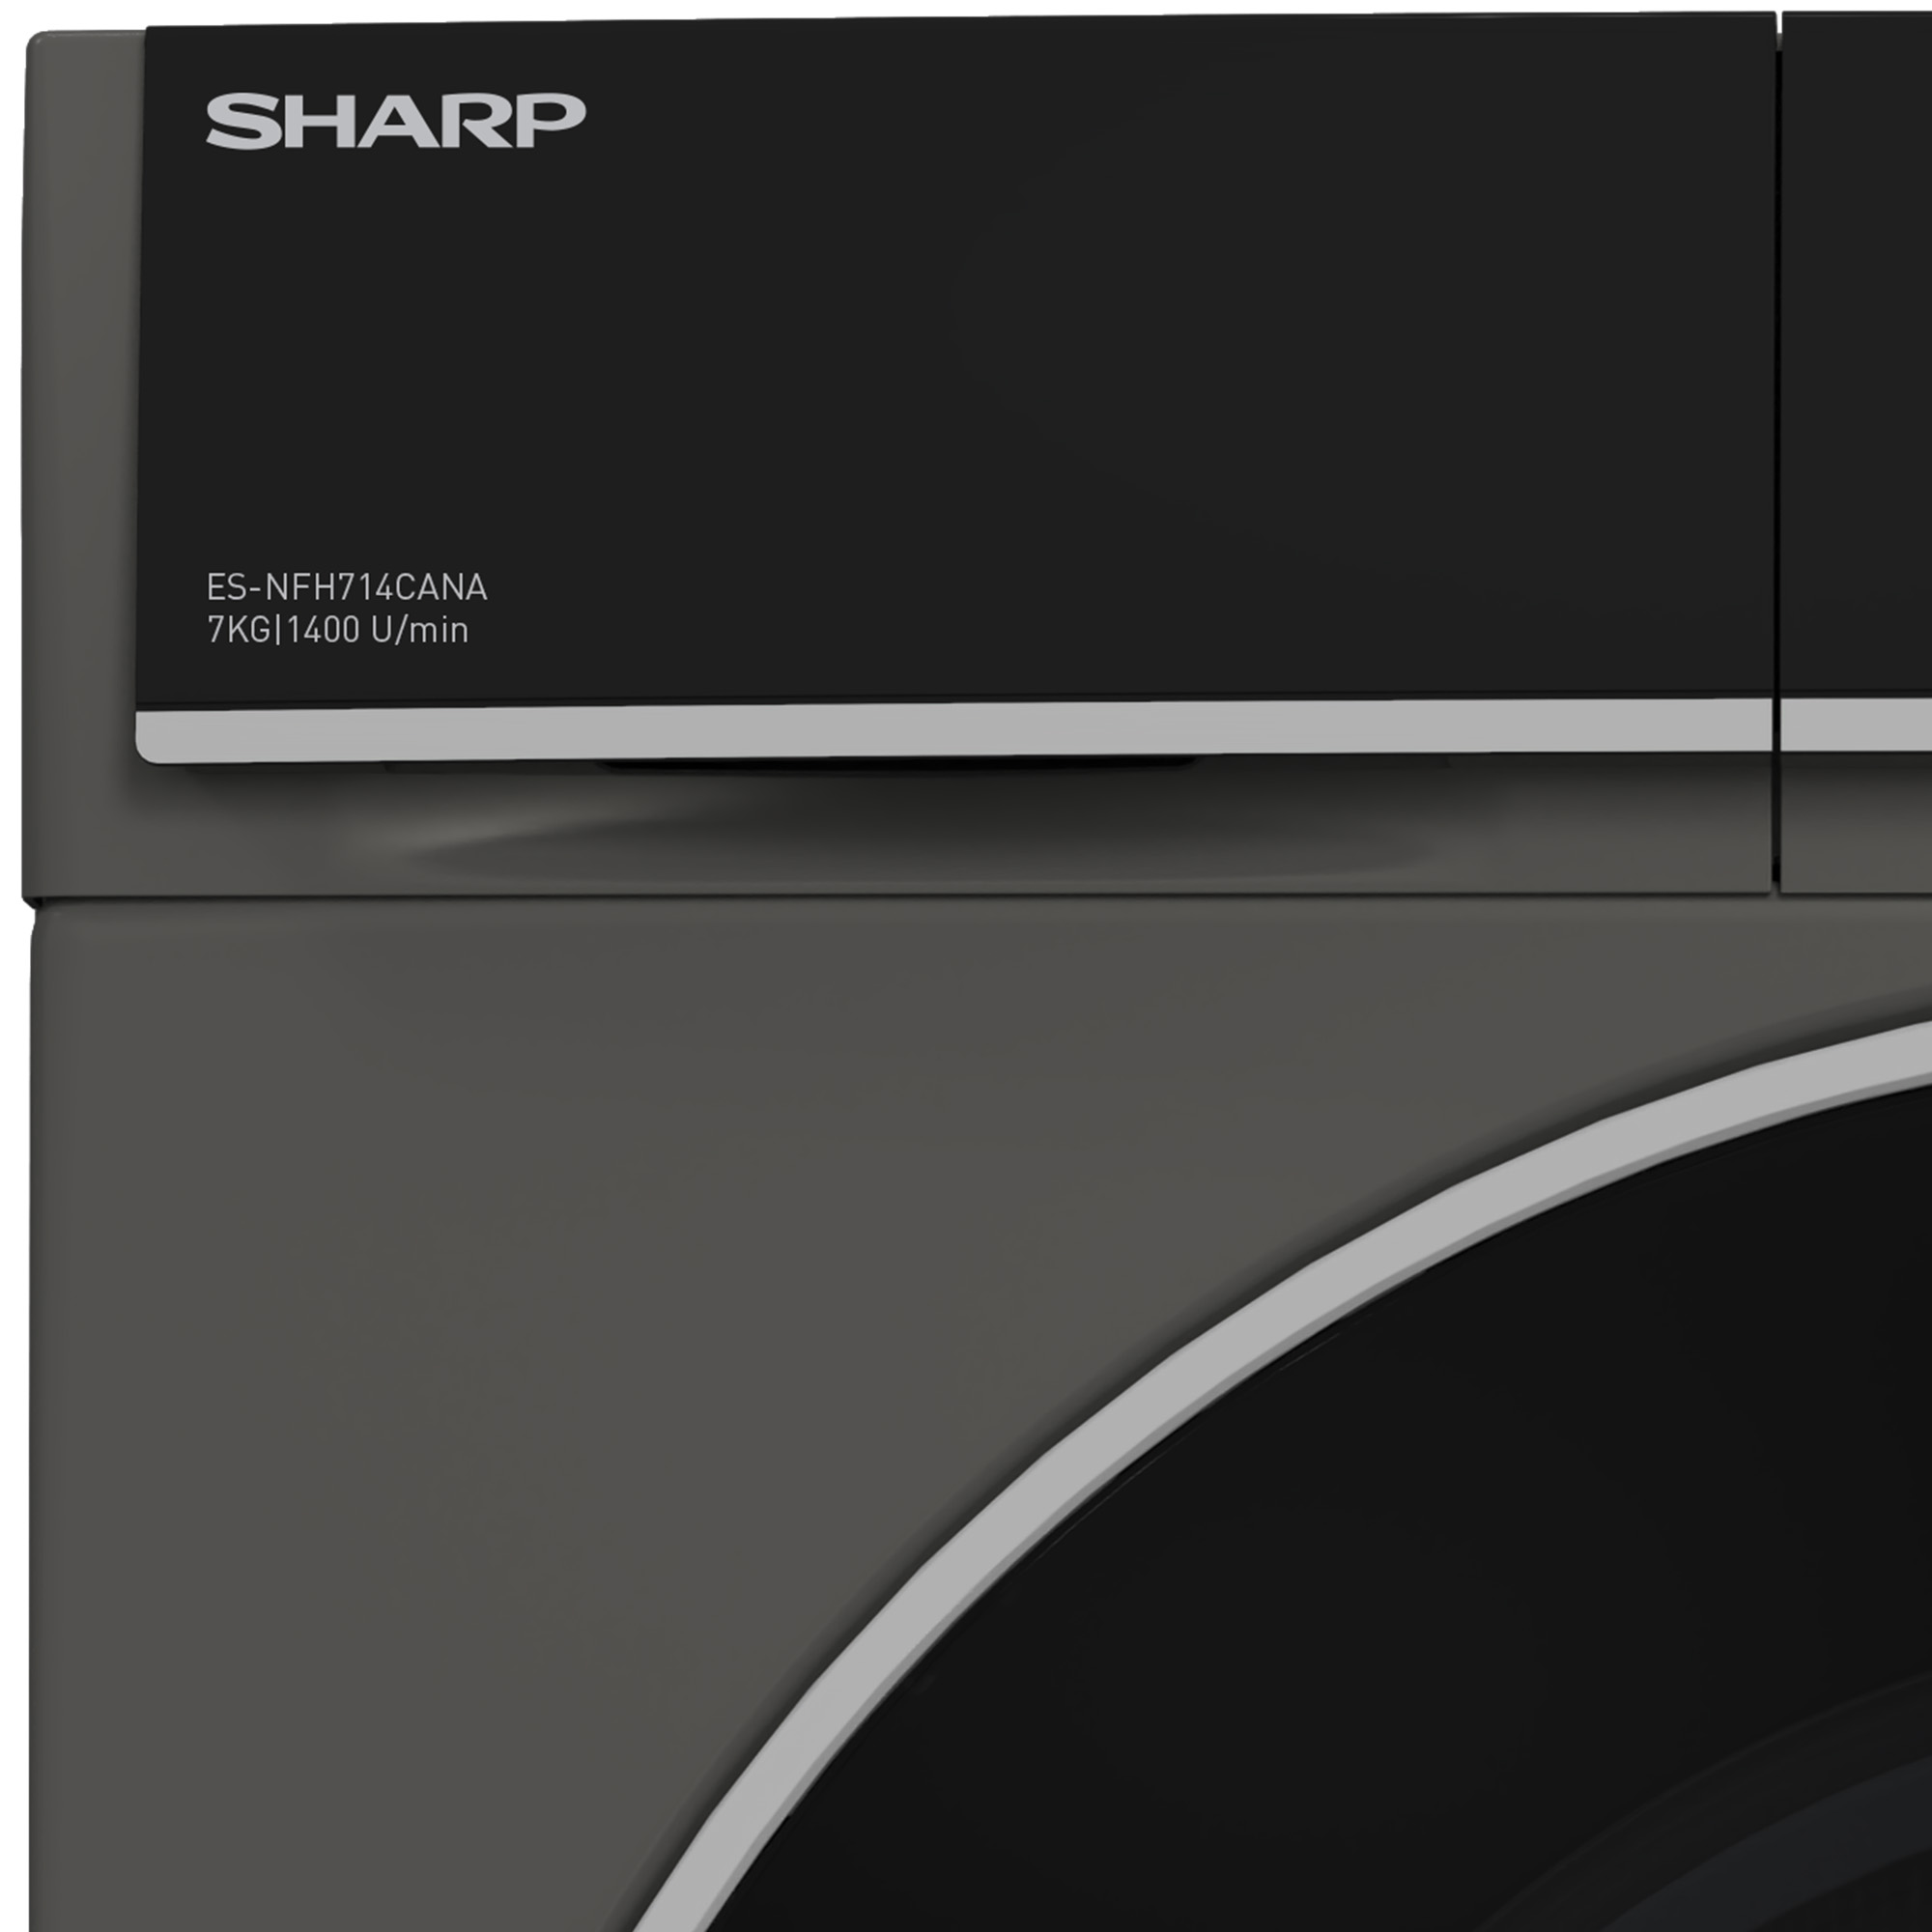 kg, A) SHARP Waschmaschine ES-NFH714CANA-DE (7